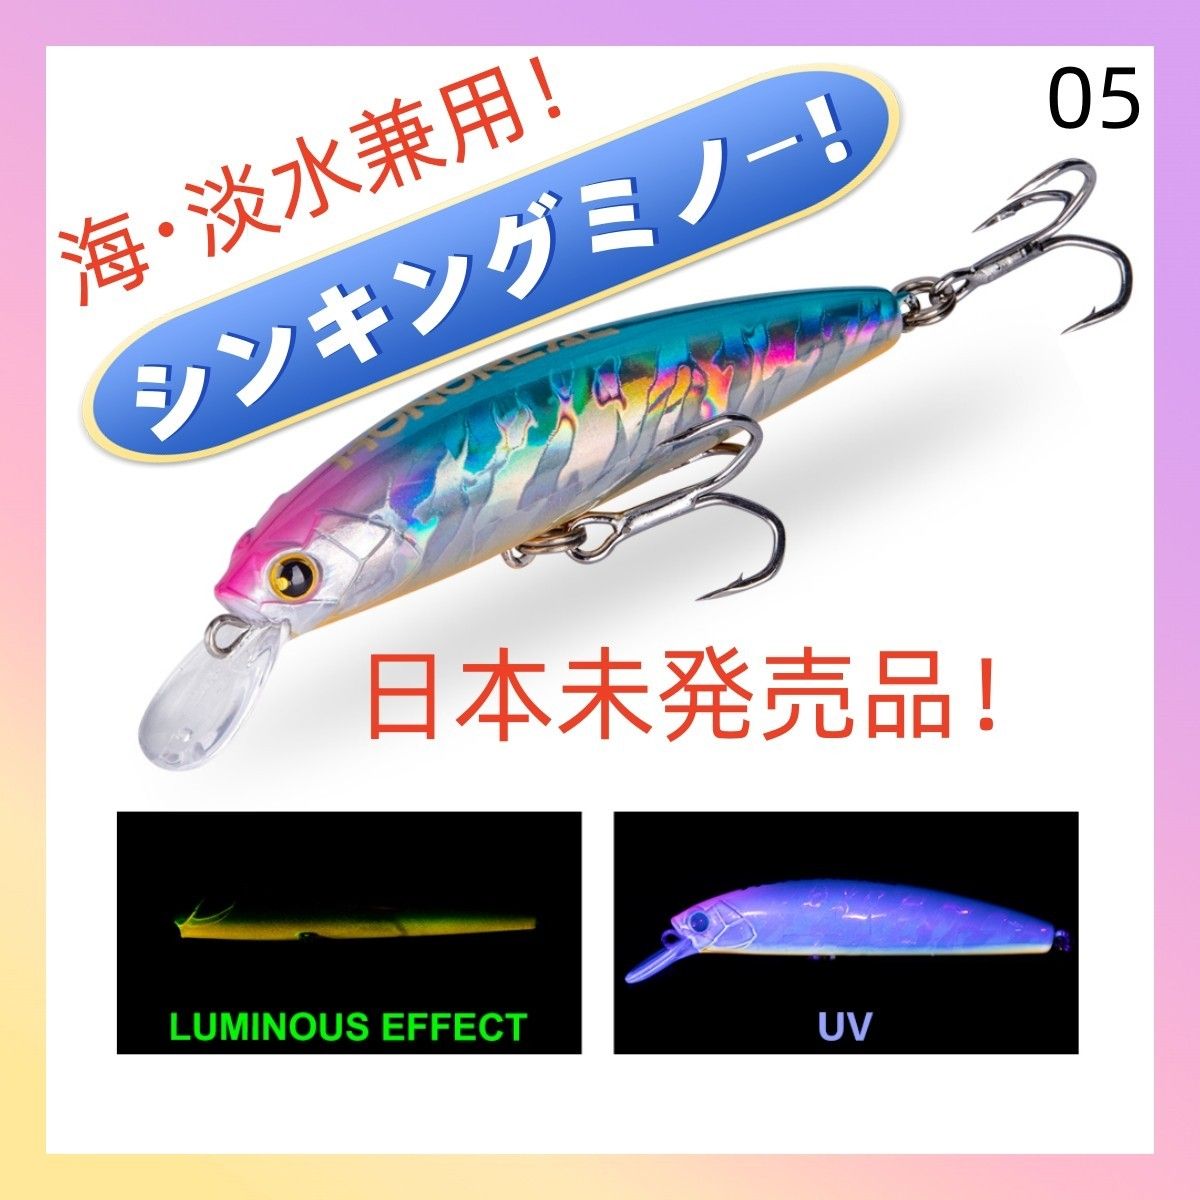 シンキングミノー 85mm 28g【海・淡水兼用】 ルアー 釣り